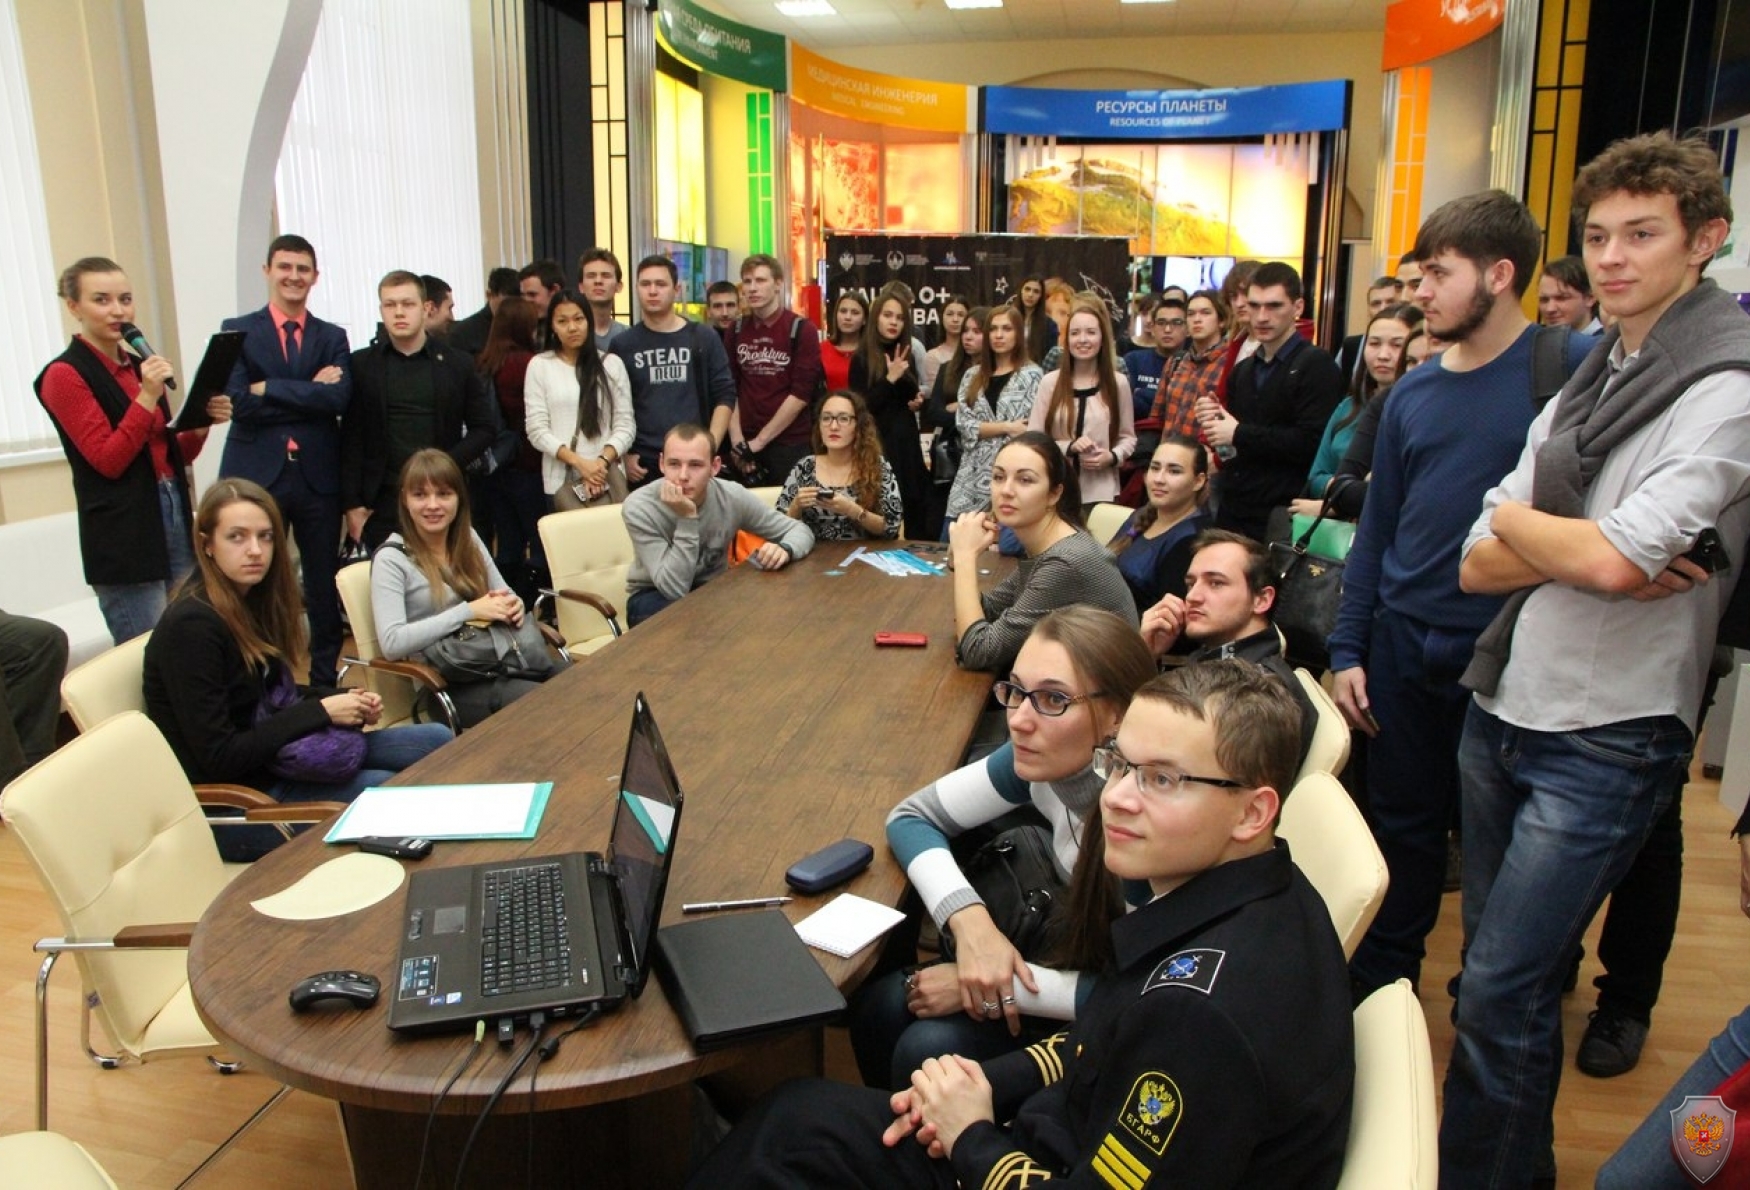 Студенческий актив Томского политеха после проведения мероприятия проявил высокую активность в беседе с гостями области.